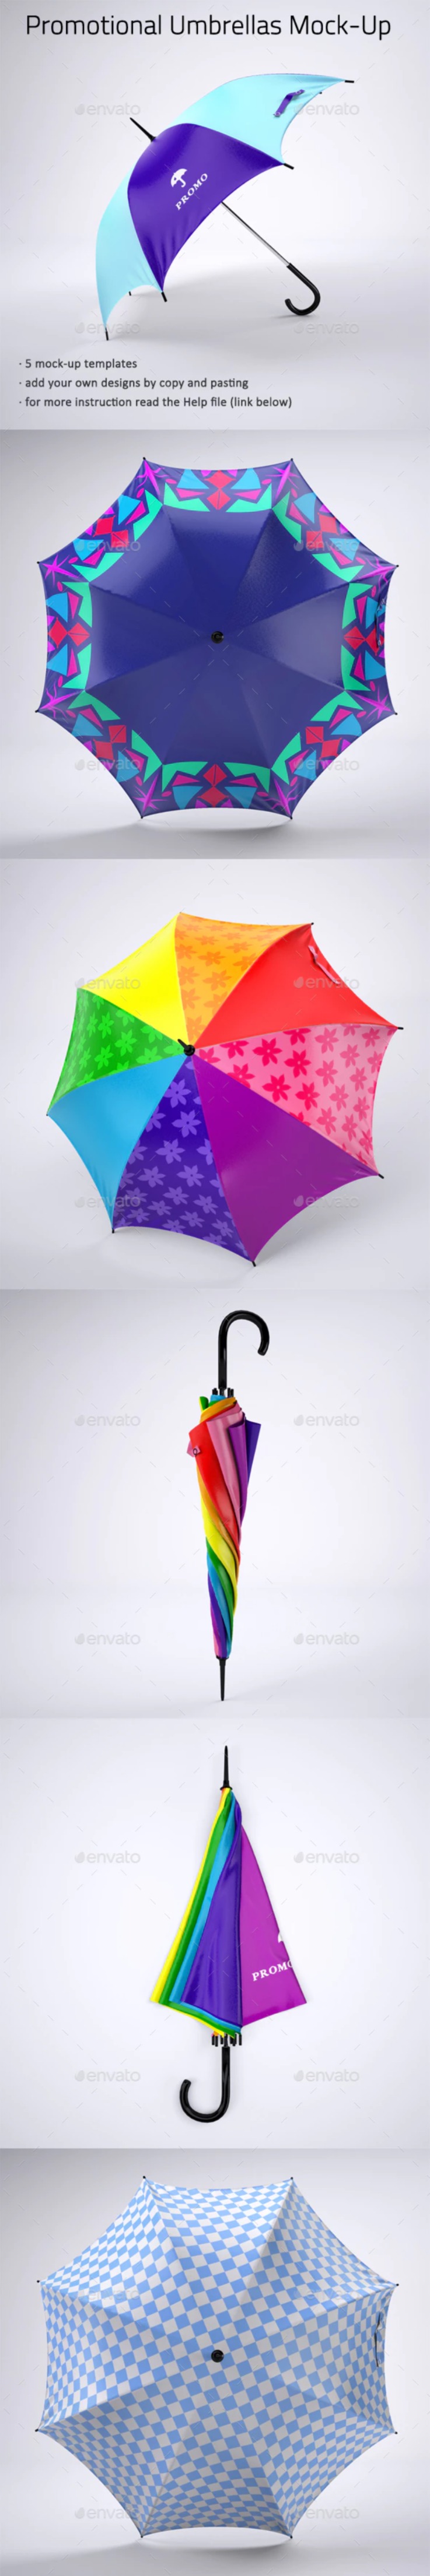 雨伞广告设计样机展示模板-联萌后期商店果子坤⎛⎝sockite⎠⎞